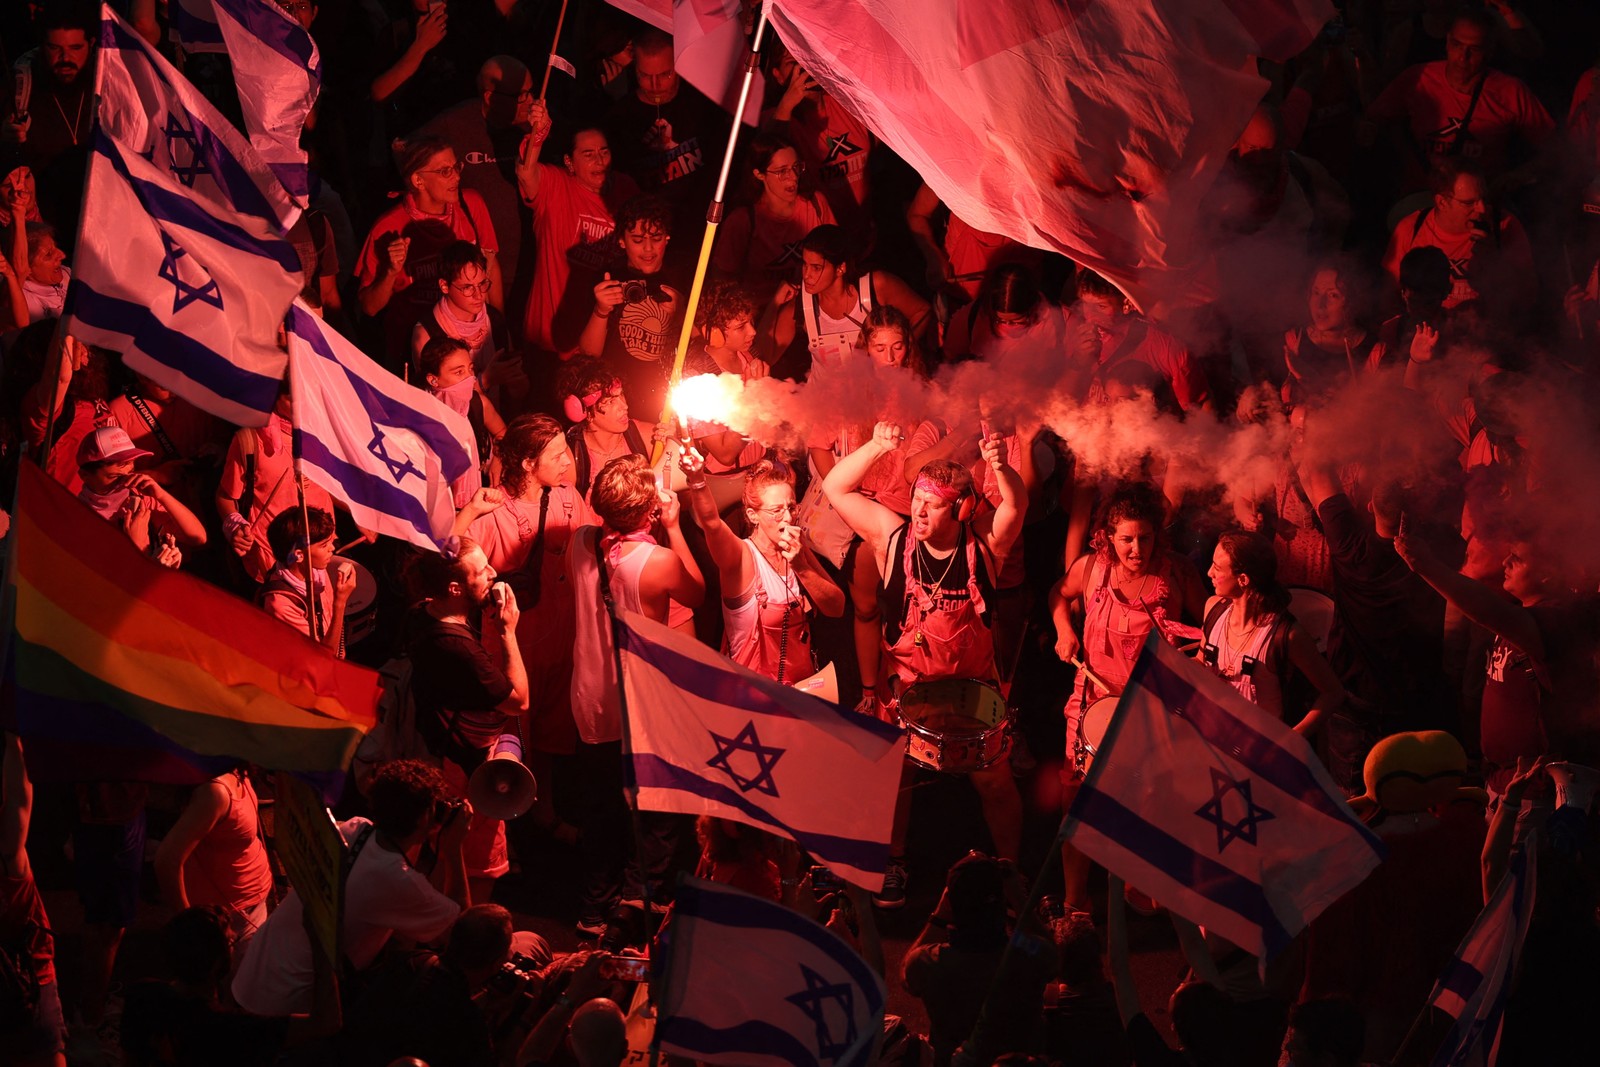 Manifestantes brandem sinalizadores durante o último protesto contra os controversos planos de reforma judicial do governo israelense — Foto: Jack Guez/AFP